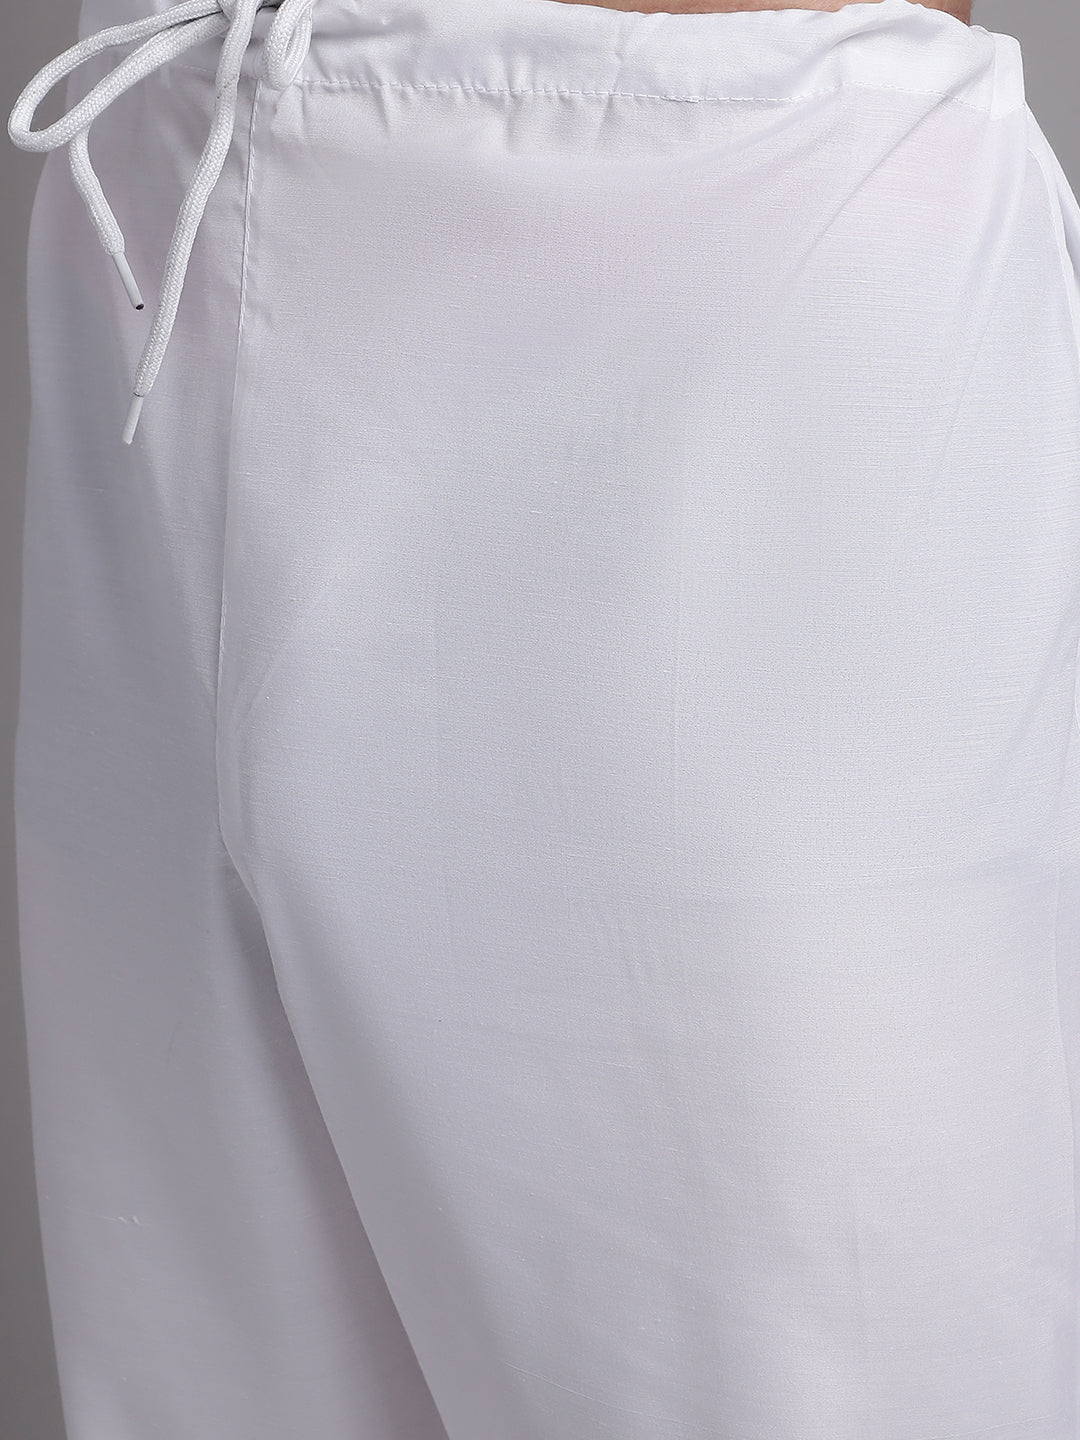 Men's White Printed Pure Cotton Kurta Payjama Set